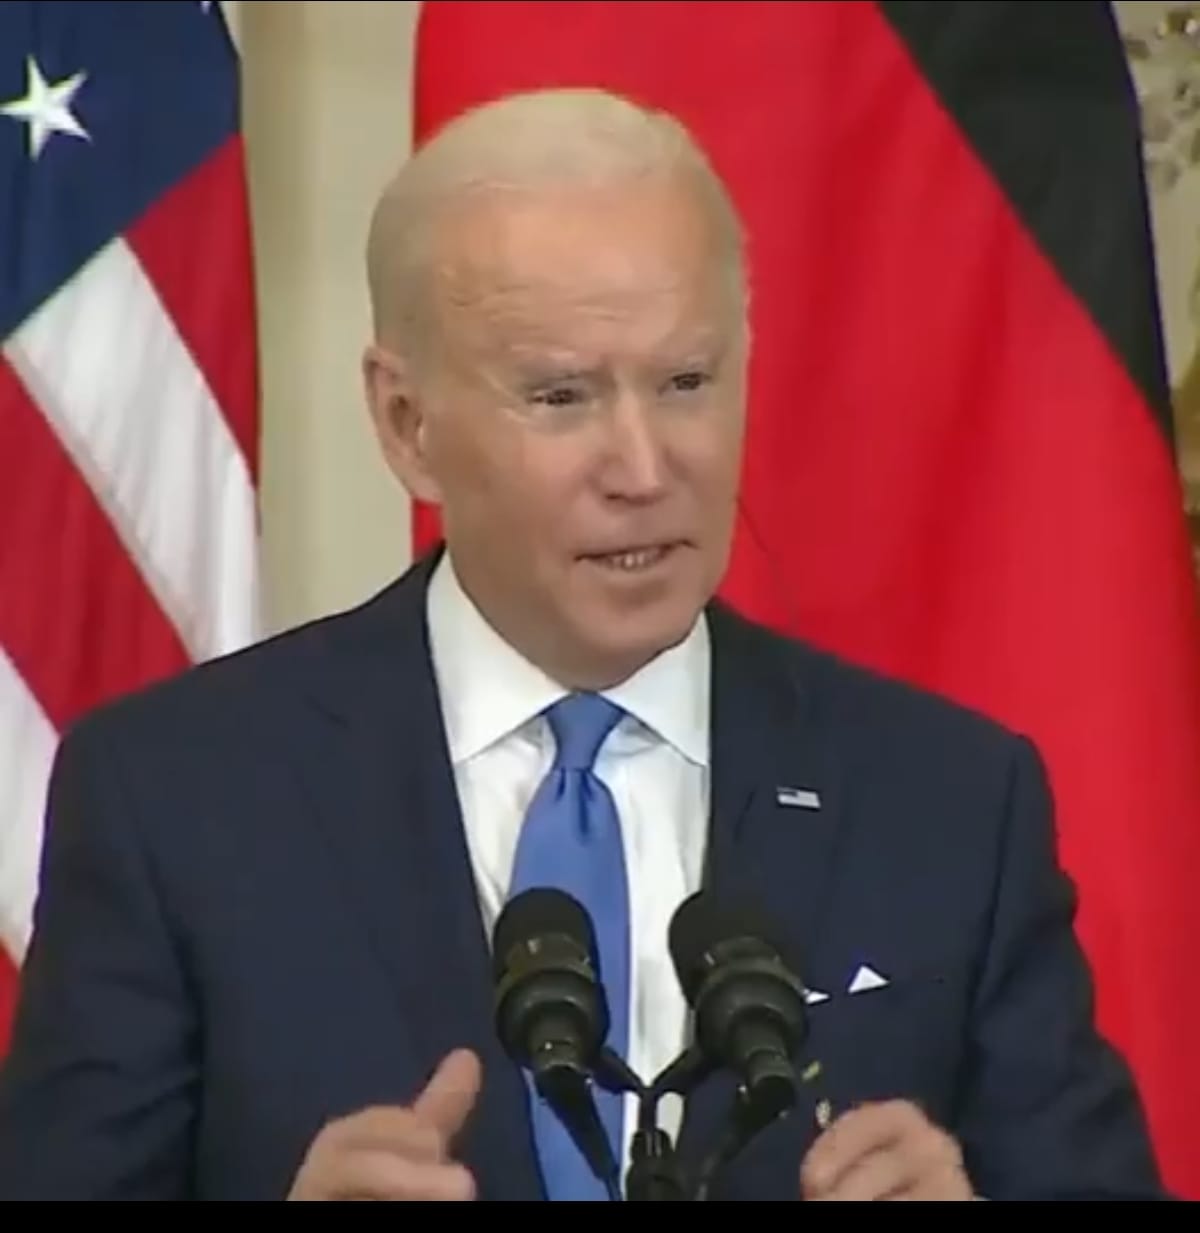 Déclaration de Joe Biden sur la fin de Nord Stream : fuite en avant et menace non tenue